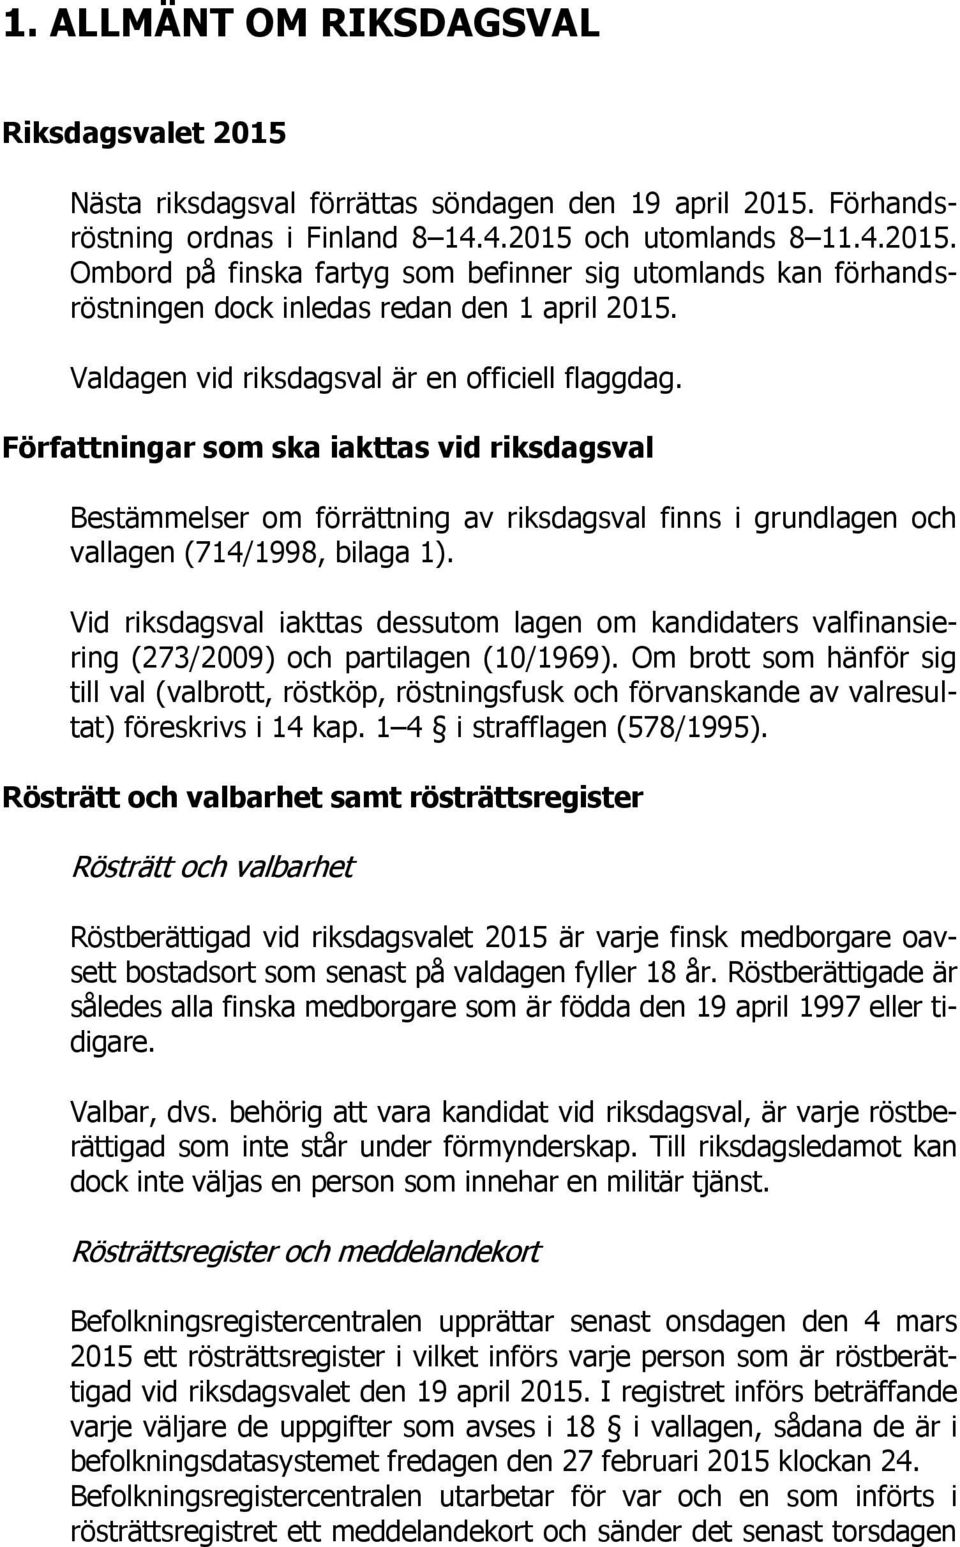 Vid riksdagsval iakttas dessutom lagen om kandidaters valfinansiering (273/2009) och partilagen (10/1969).